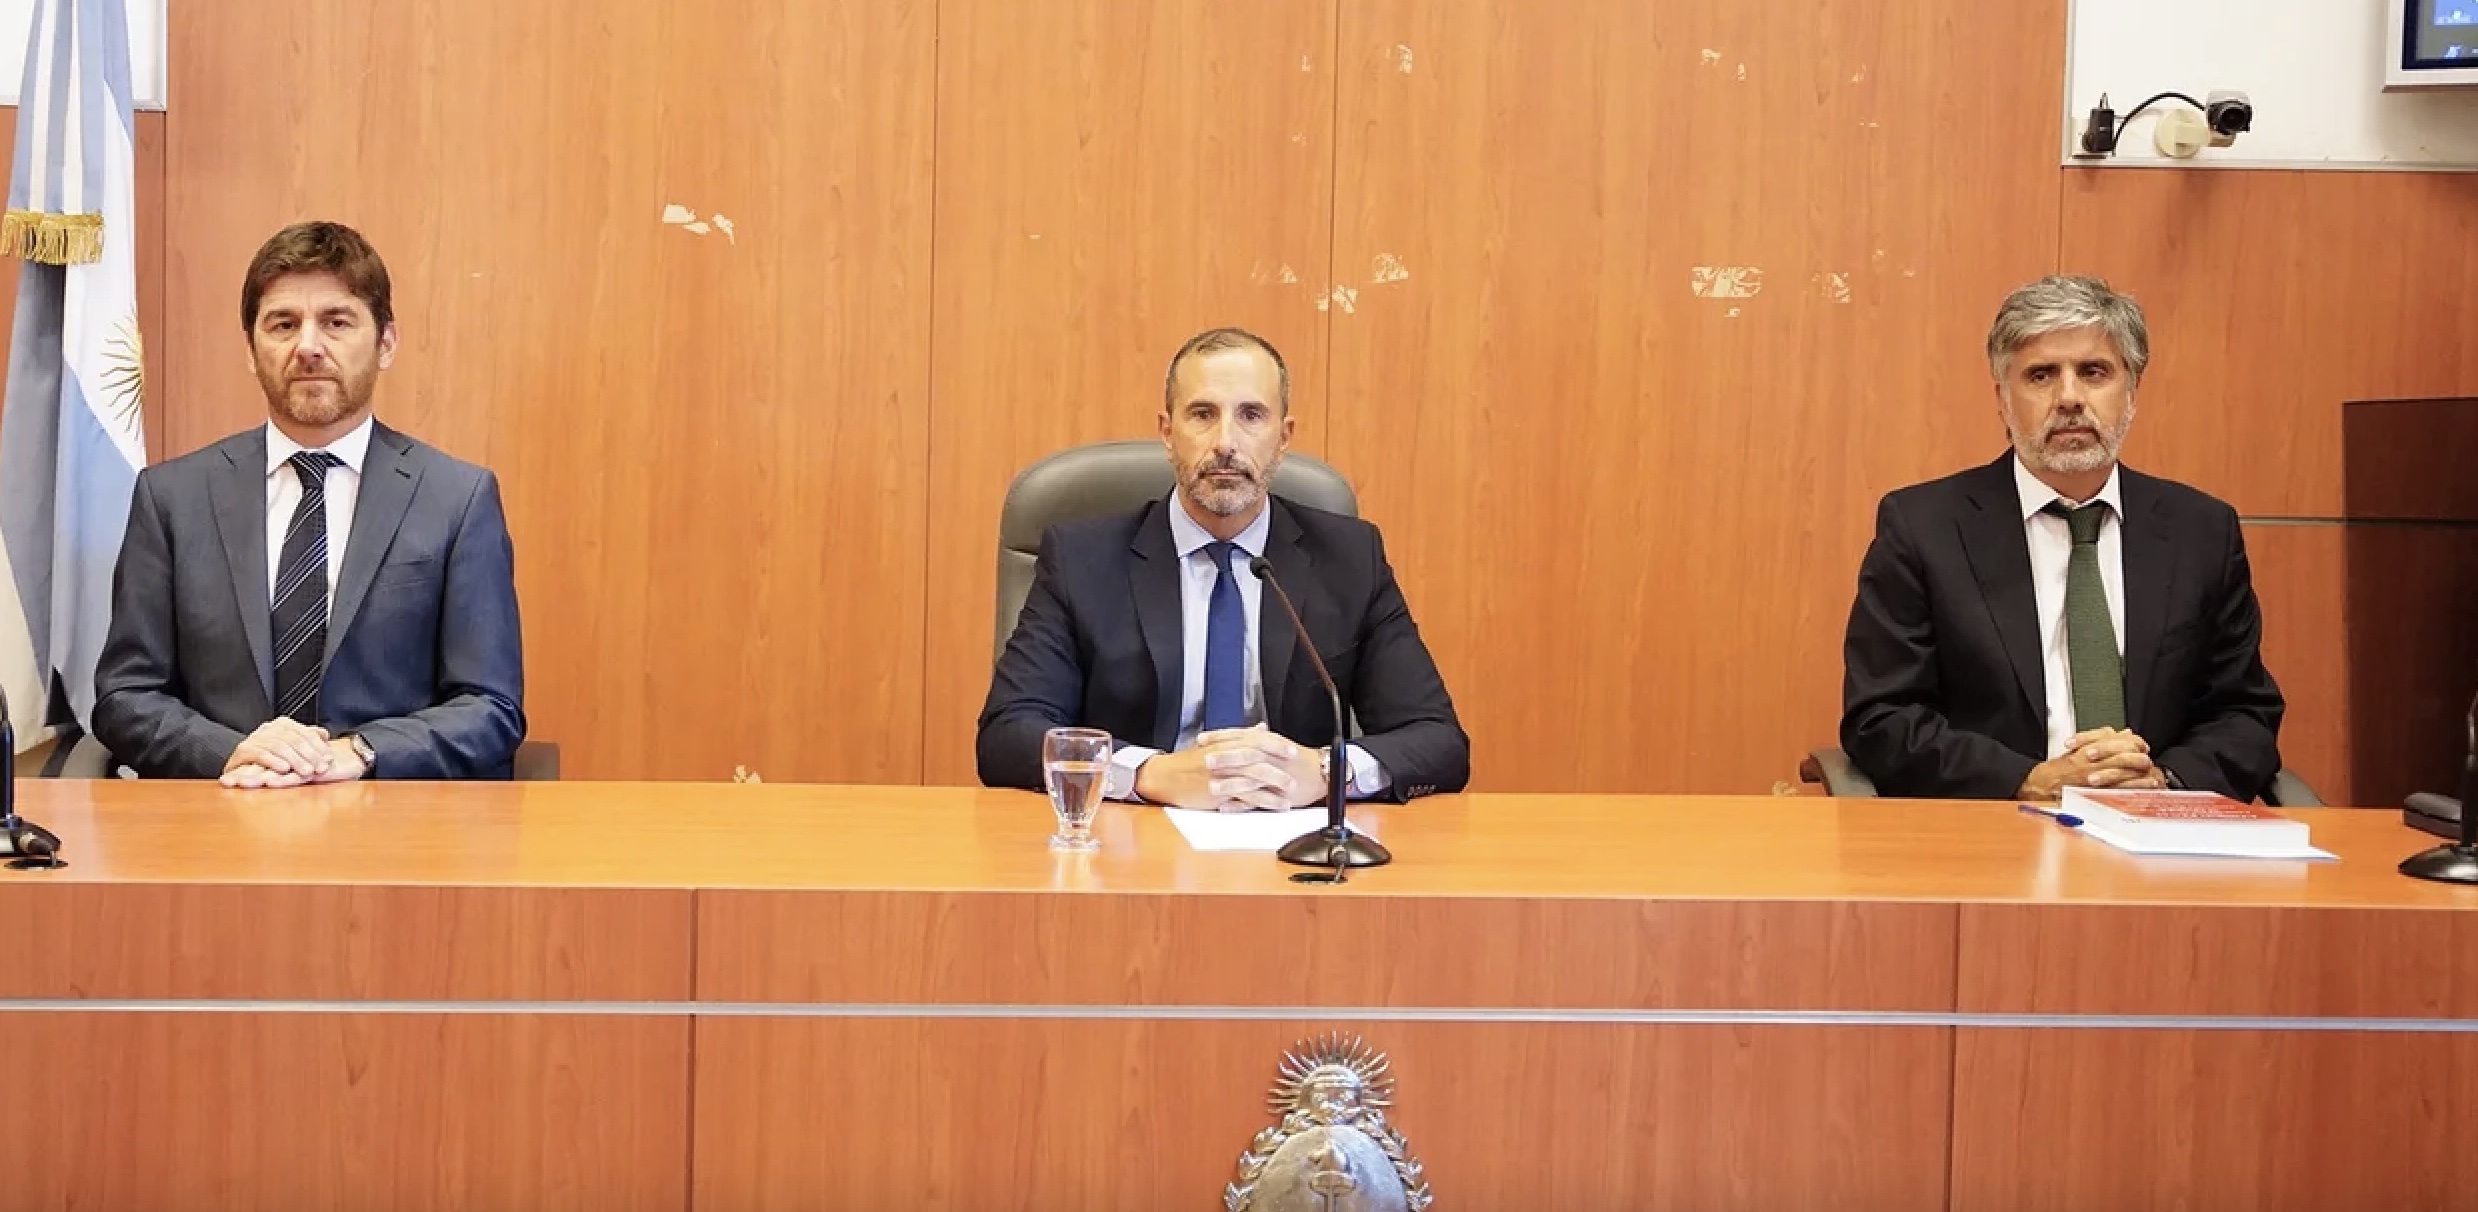 Los tres jueces que condenaron a la vicepresidenta argentina, Jorge Gorini, Rodrigo Giménez Uriburu y Andrés Basso. Foto: Captura de pantalla.